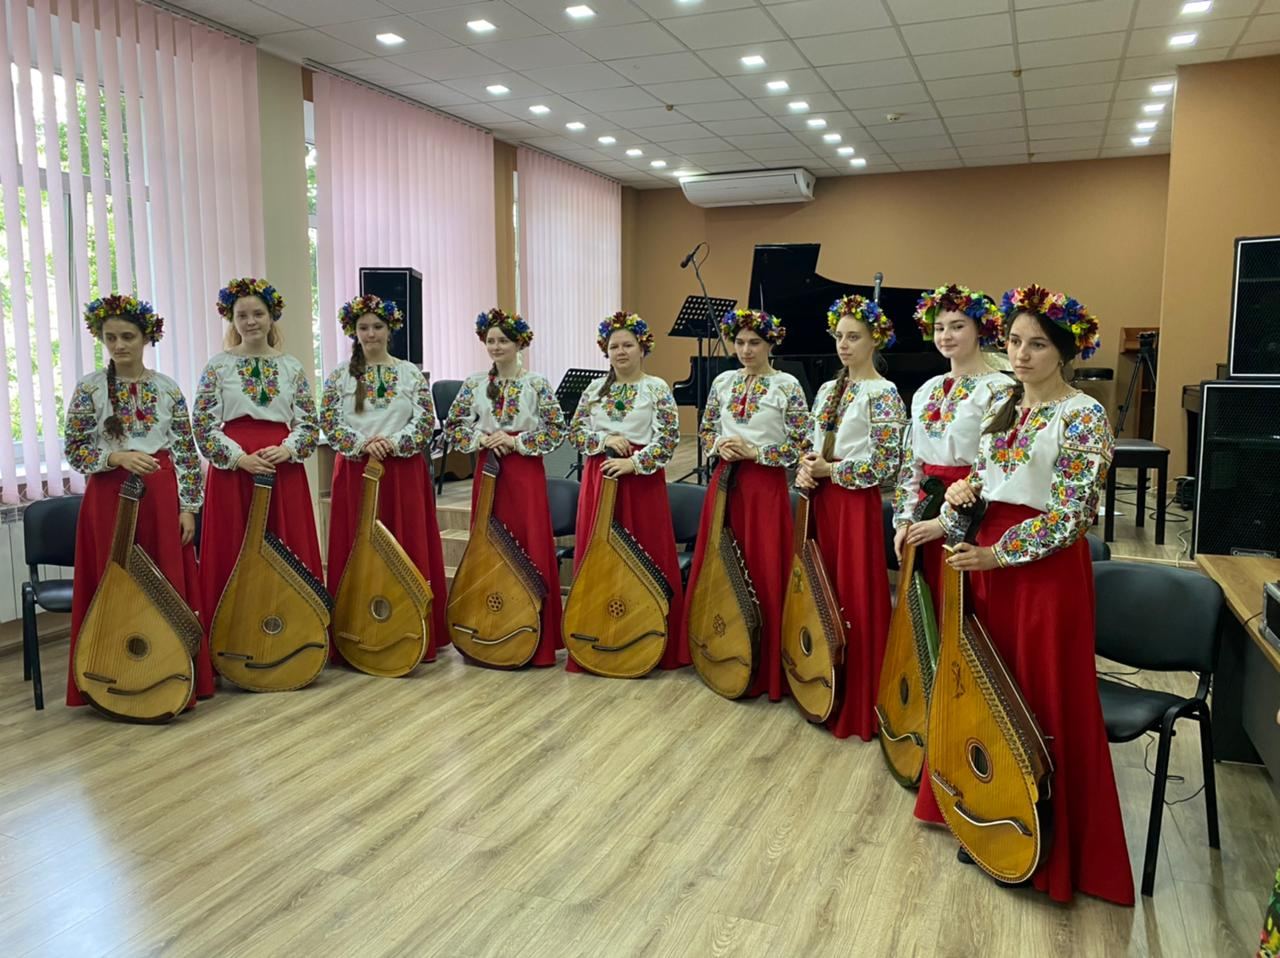 Азербайджан и Украина расширяют связи в сфере культуры (ФОТО)